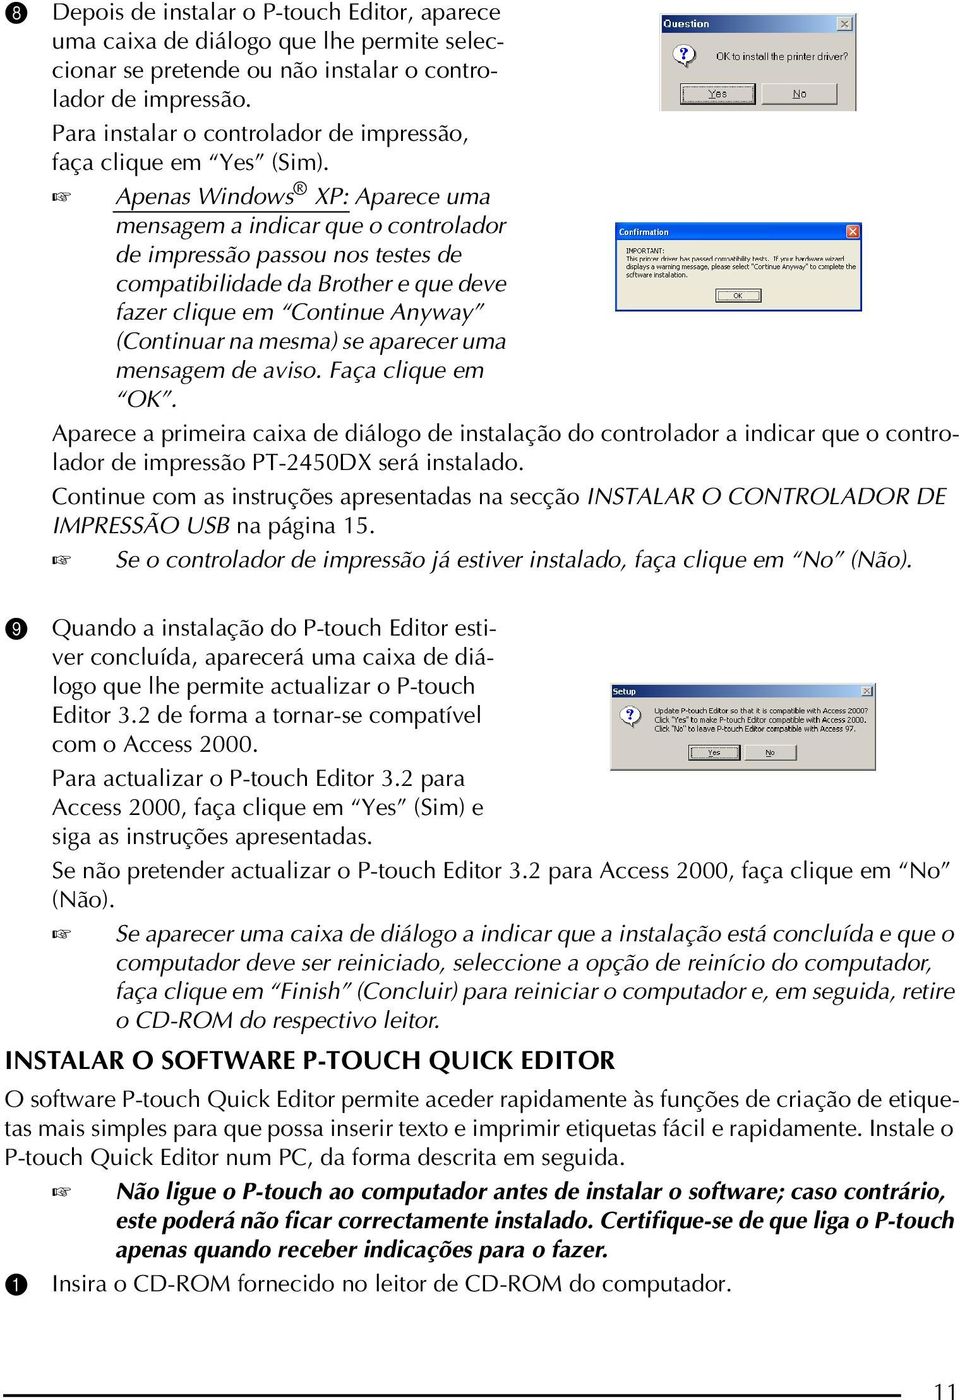 Apenas Windows XP: Aparece uma mensagem a indicar que o controlador de impressão passou nos testes de compatibilidade da Brother e que deve fazer clique em Continue Anyway (Continuar na mesma) se